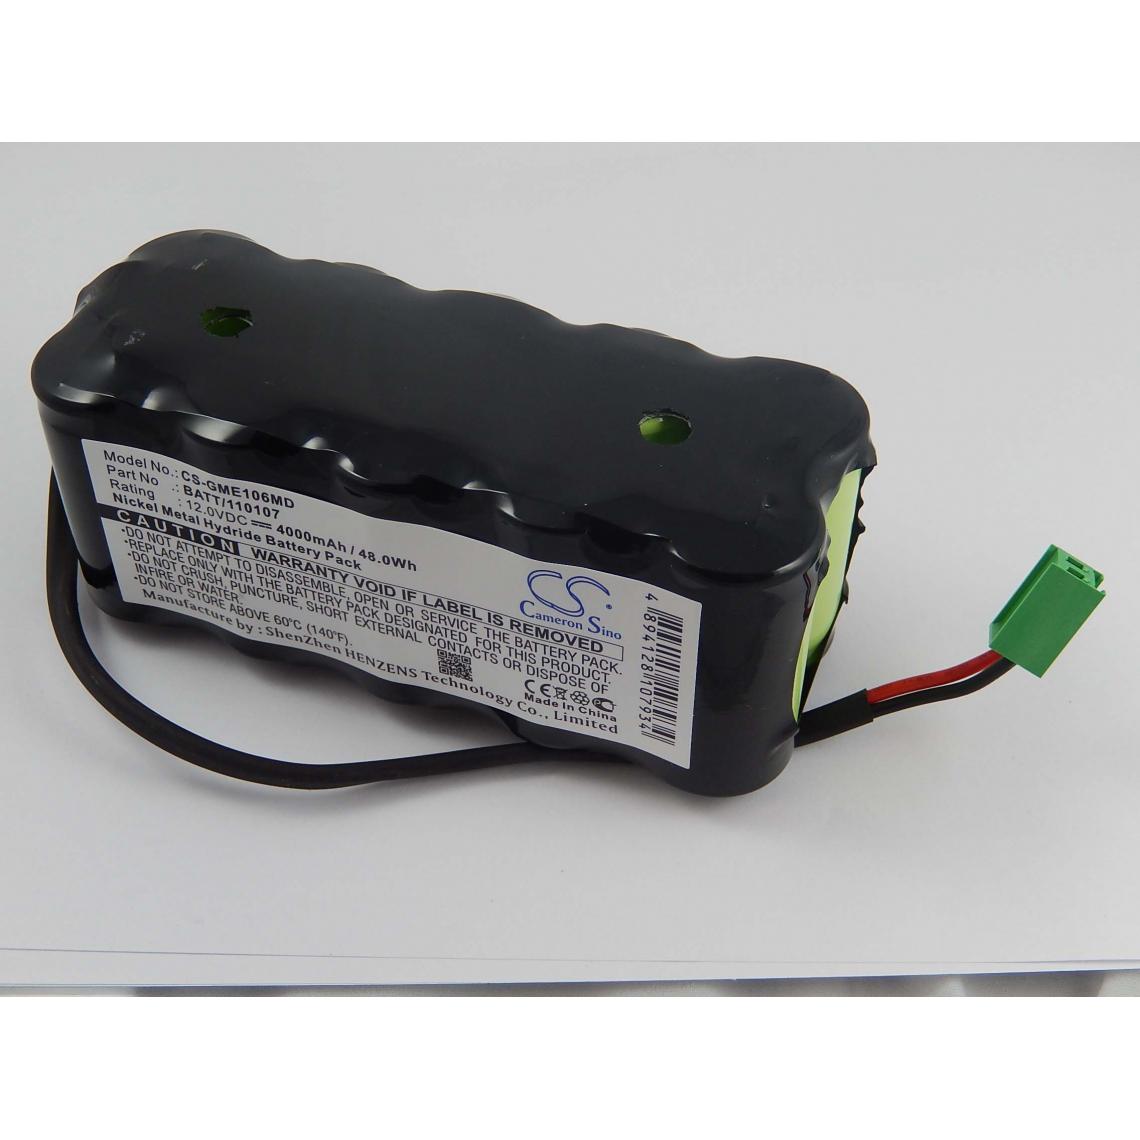 Vhbw - vhbw Batterie compatible avec GE Dash 1000 appareil médical (4000mAh, 12V, NiMH) - Piles spécifiques